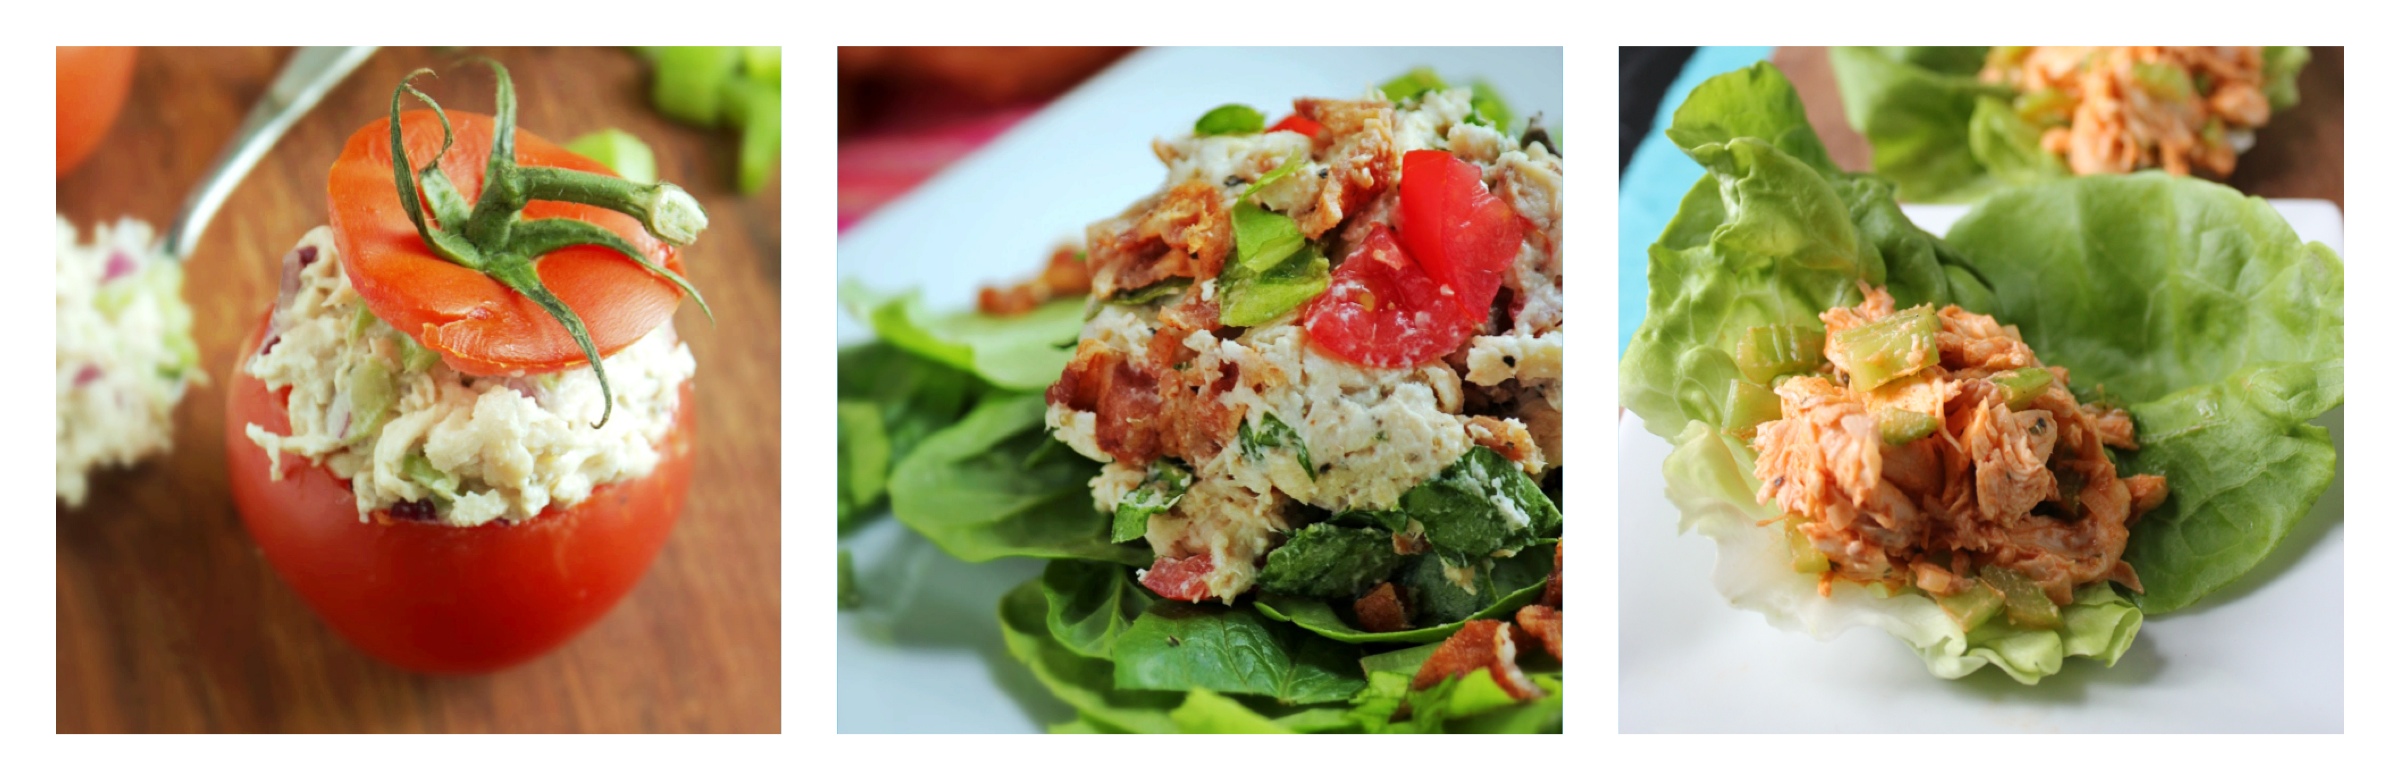 Chicken Salad, prepared three ways